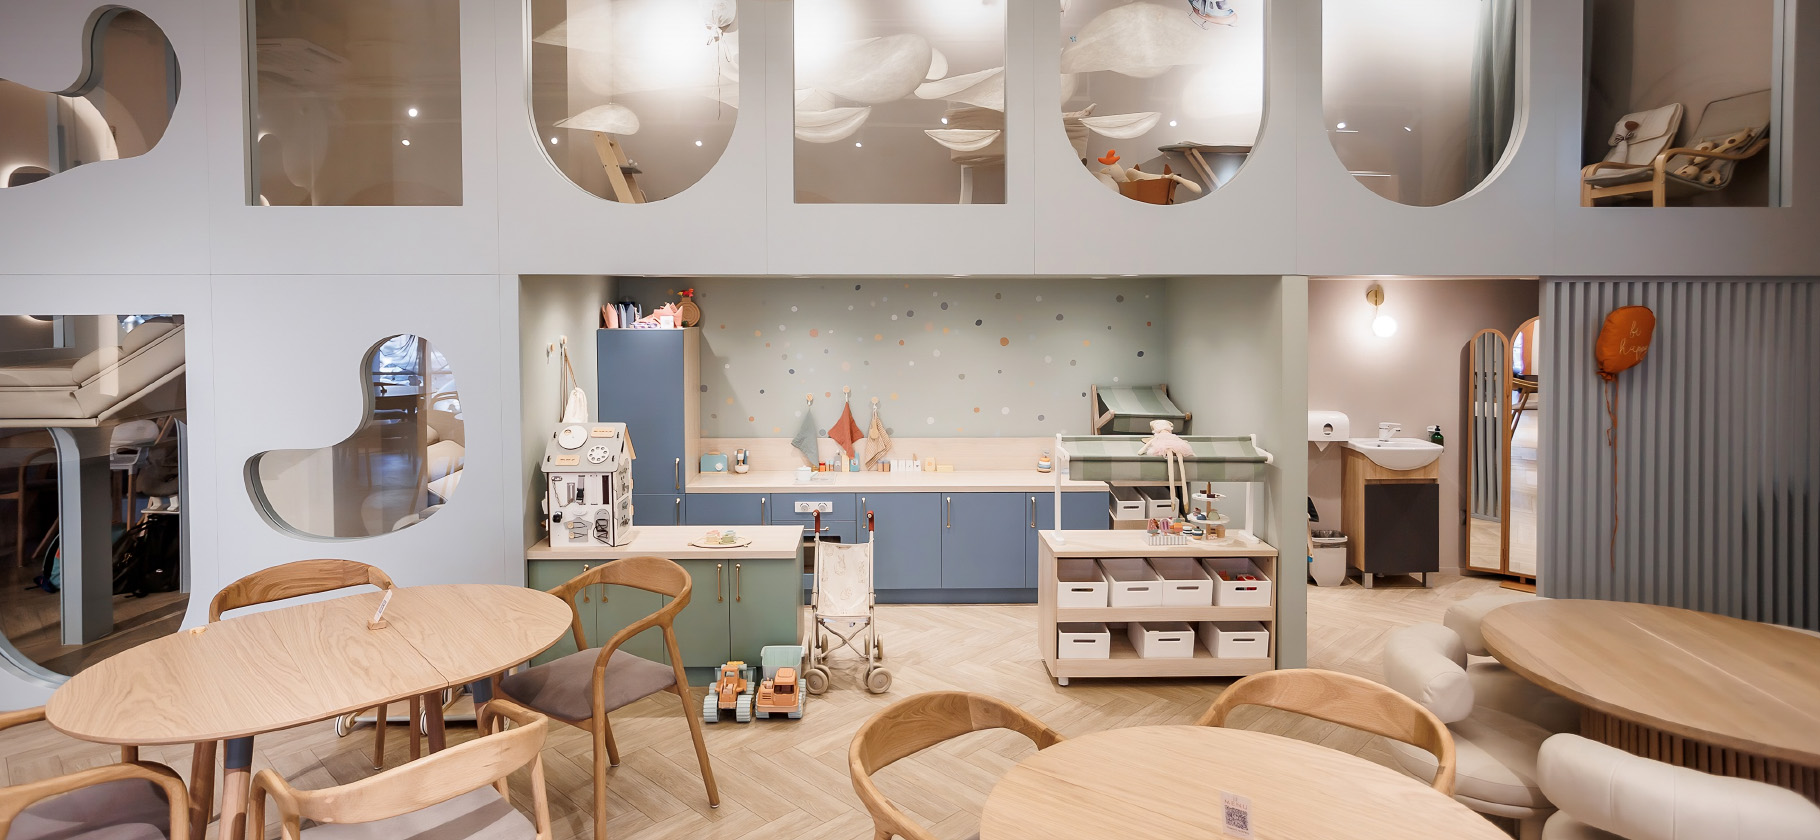 Где покормить и развлечь ребенка: 7 ресторанов Санкт-Петербурга с игровыми комнатами